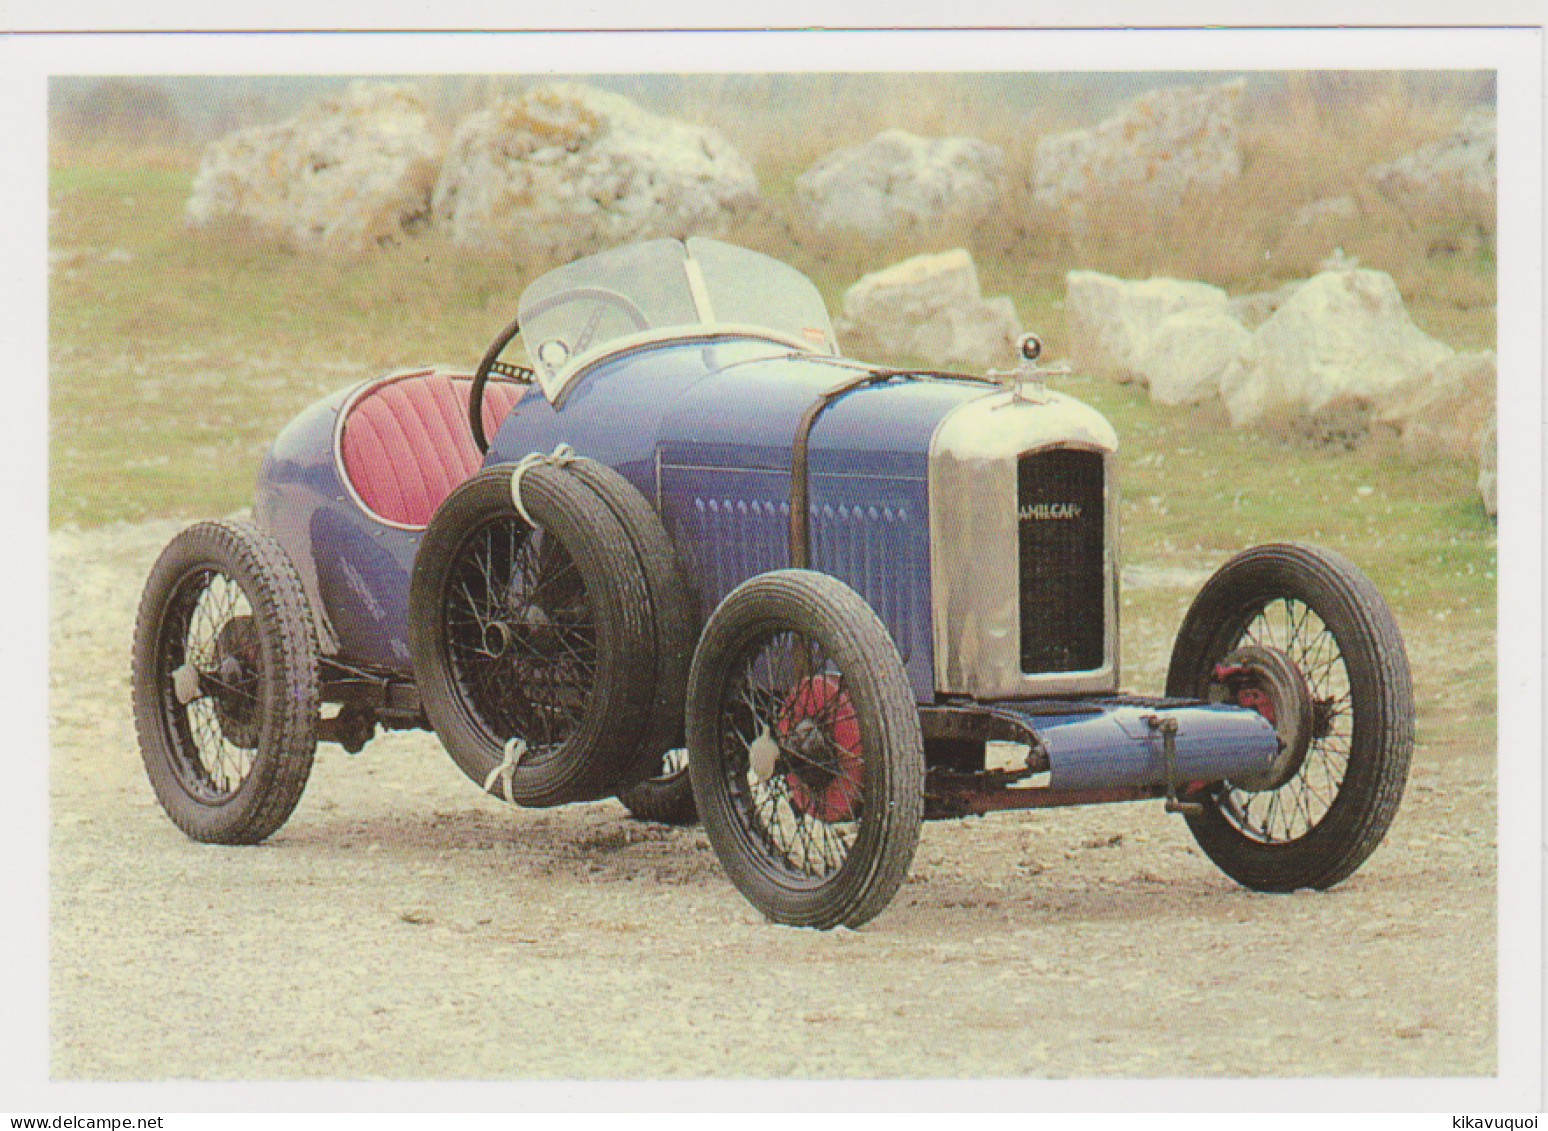 AMILCAR CGS DE 1925 A 1929 - Carte Postale 10X15 CM NEUF - PKW